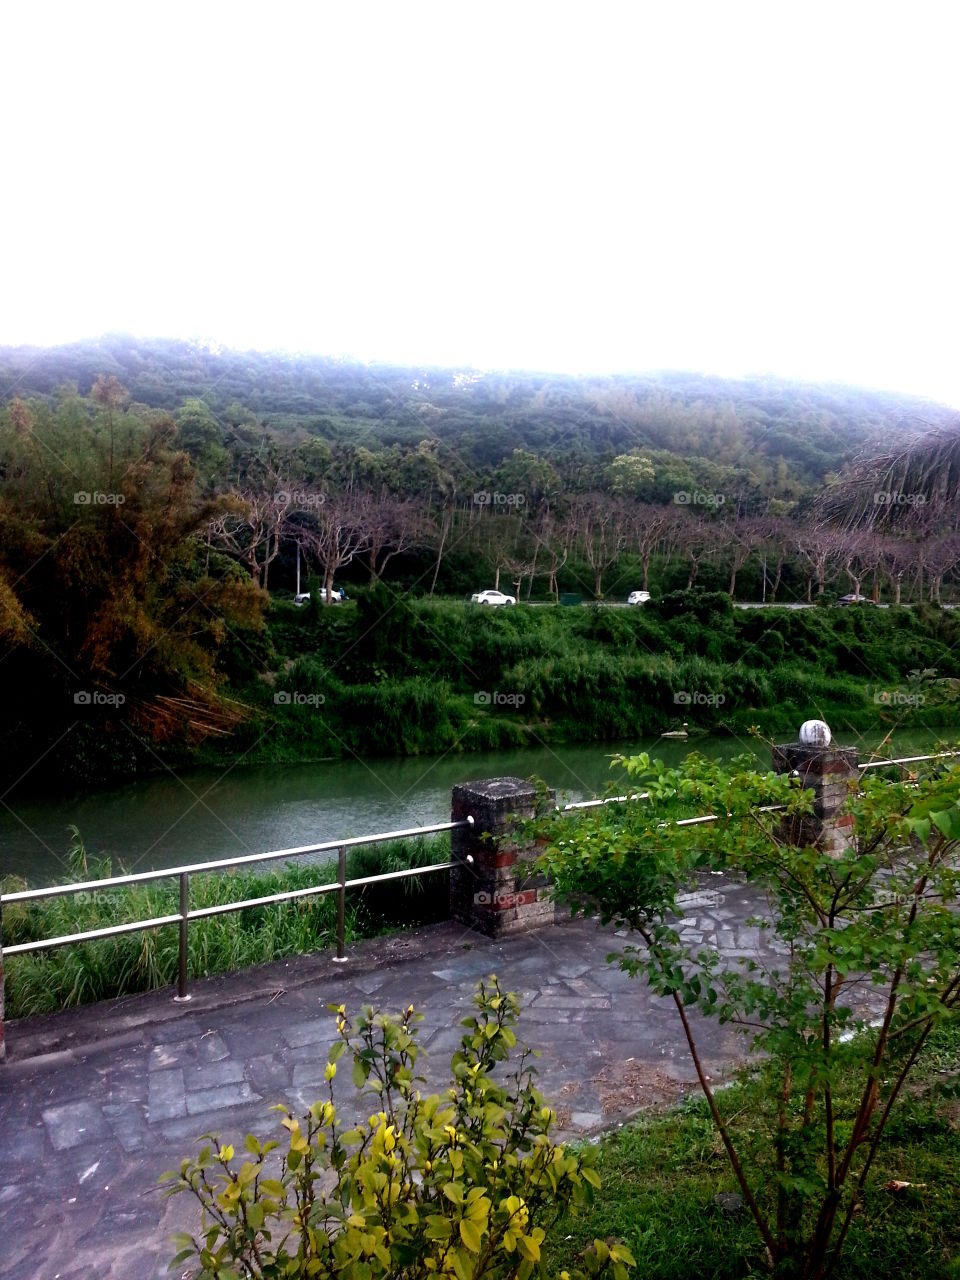 River in Hualien